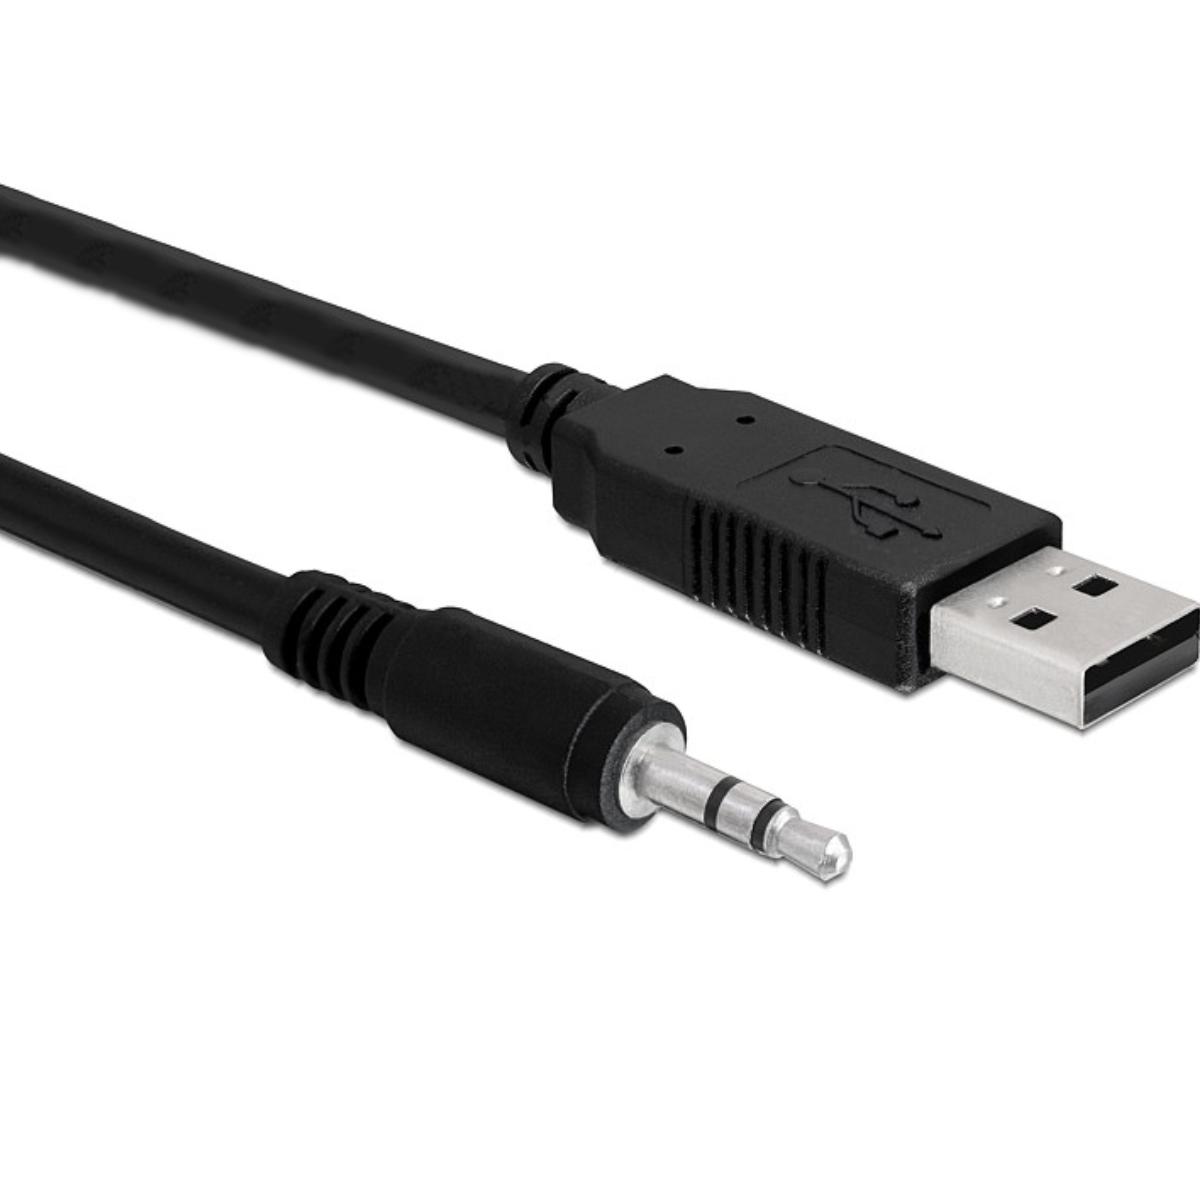 Jack kabel - Stereo - USB kabel